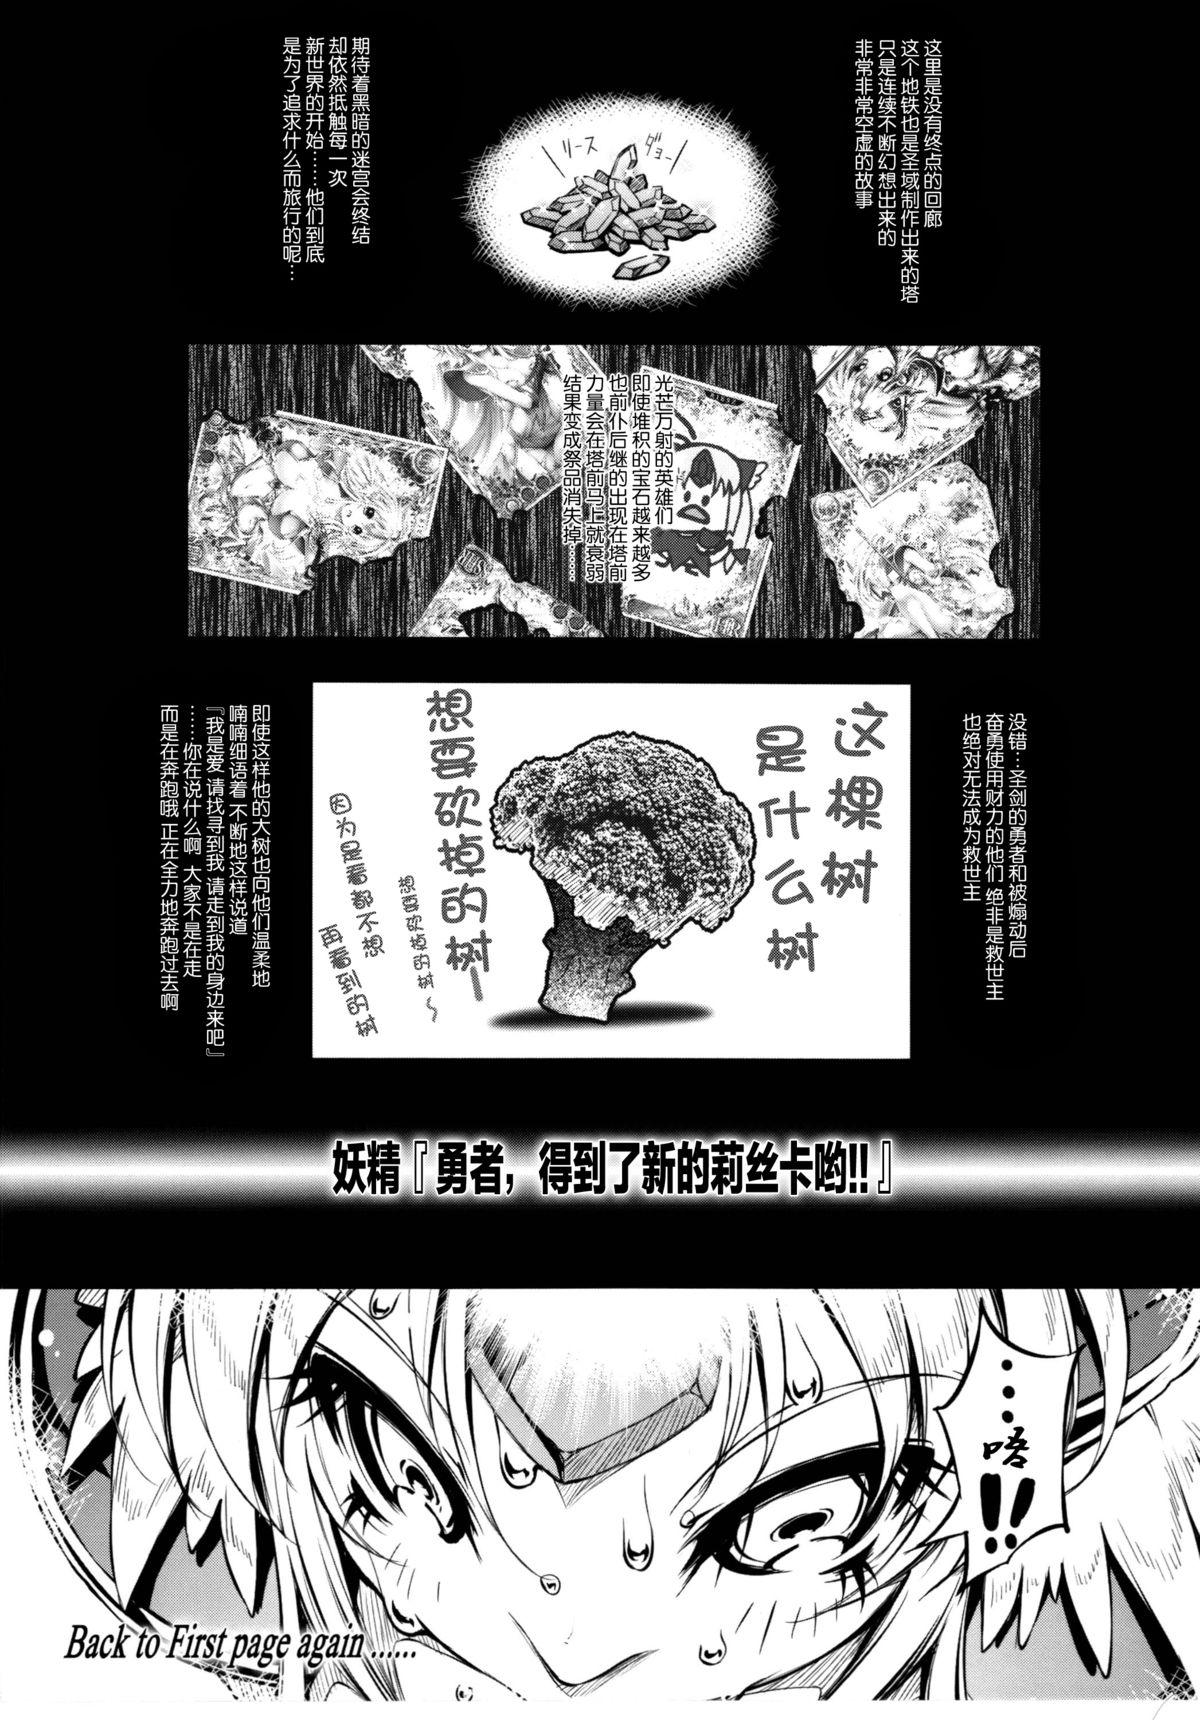 Gag Minasan COM ni Juuman-nin no User ga Imasu. - Seiken densetsu 3 Family Taboo - Page 12